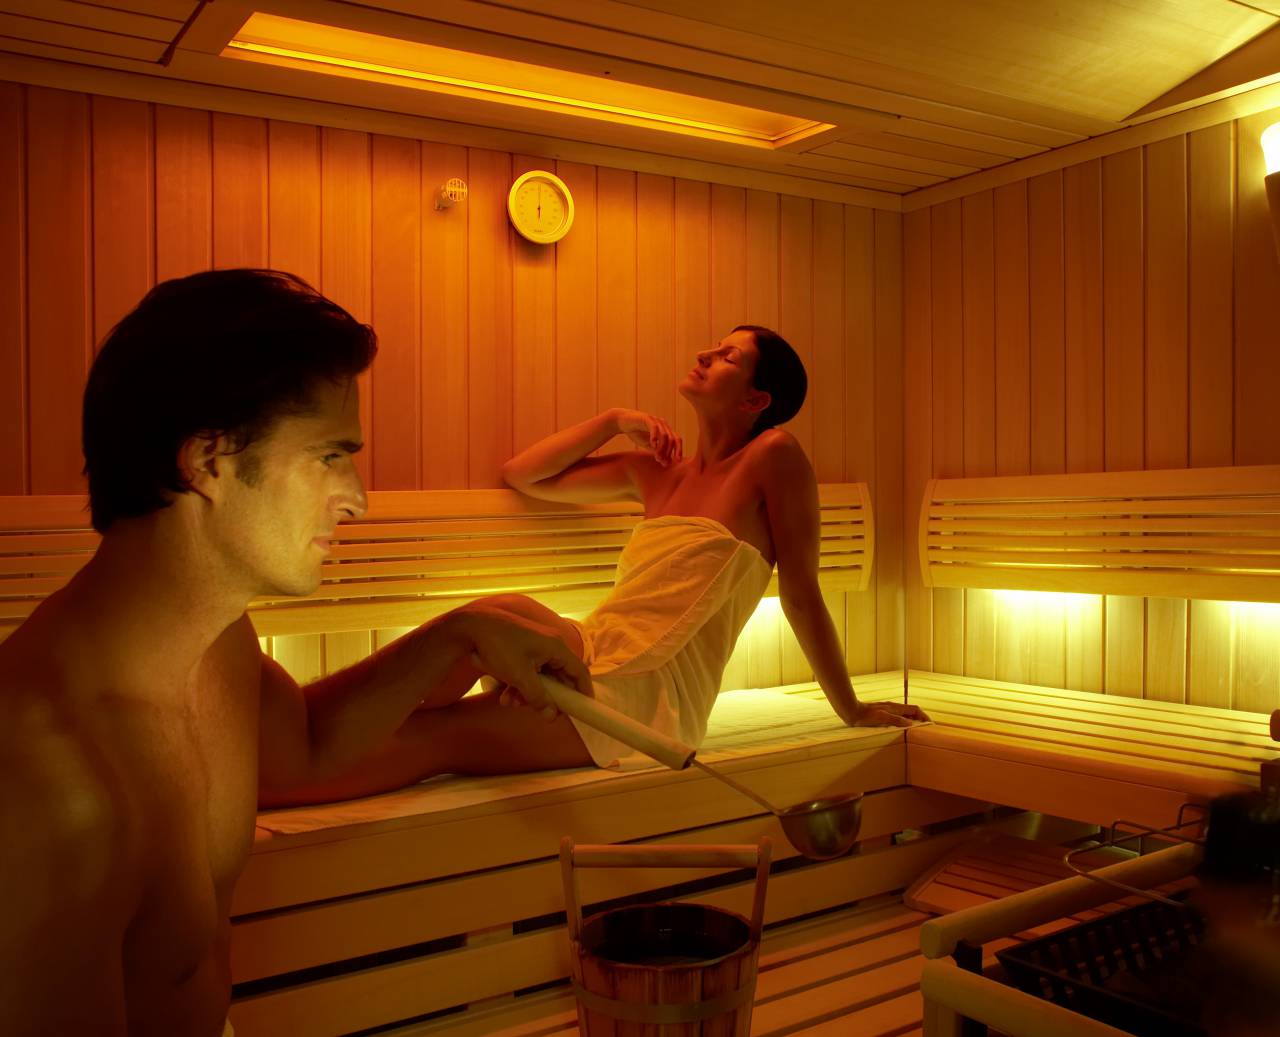 Mann und Frau schwitzen und entspannen in einer kleinen Sauna bei einem Aufguss